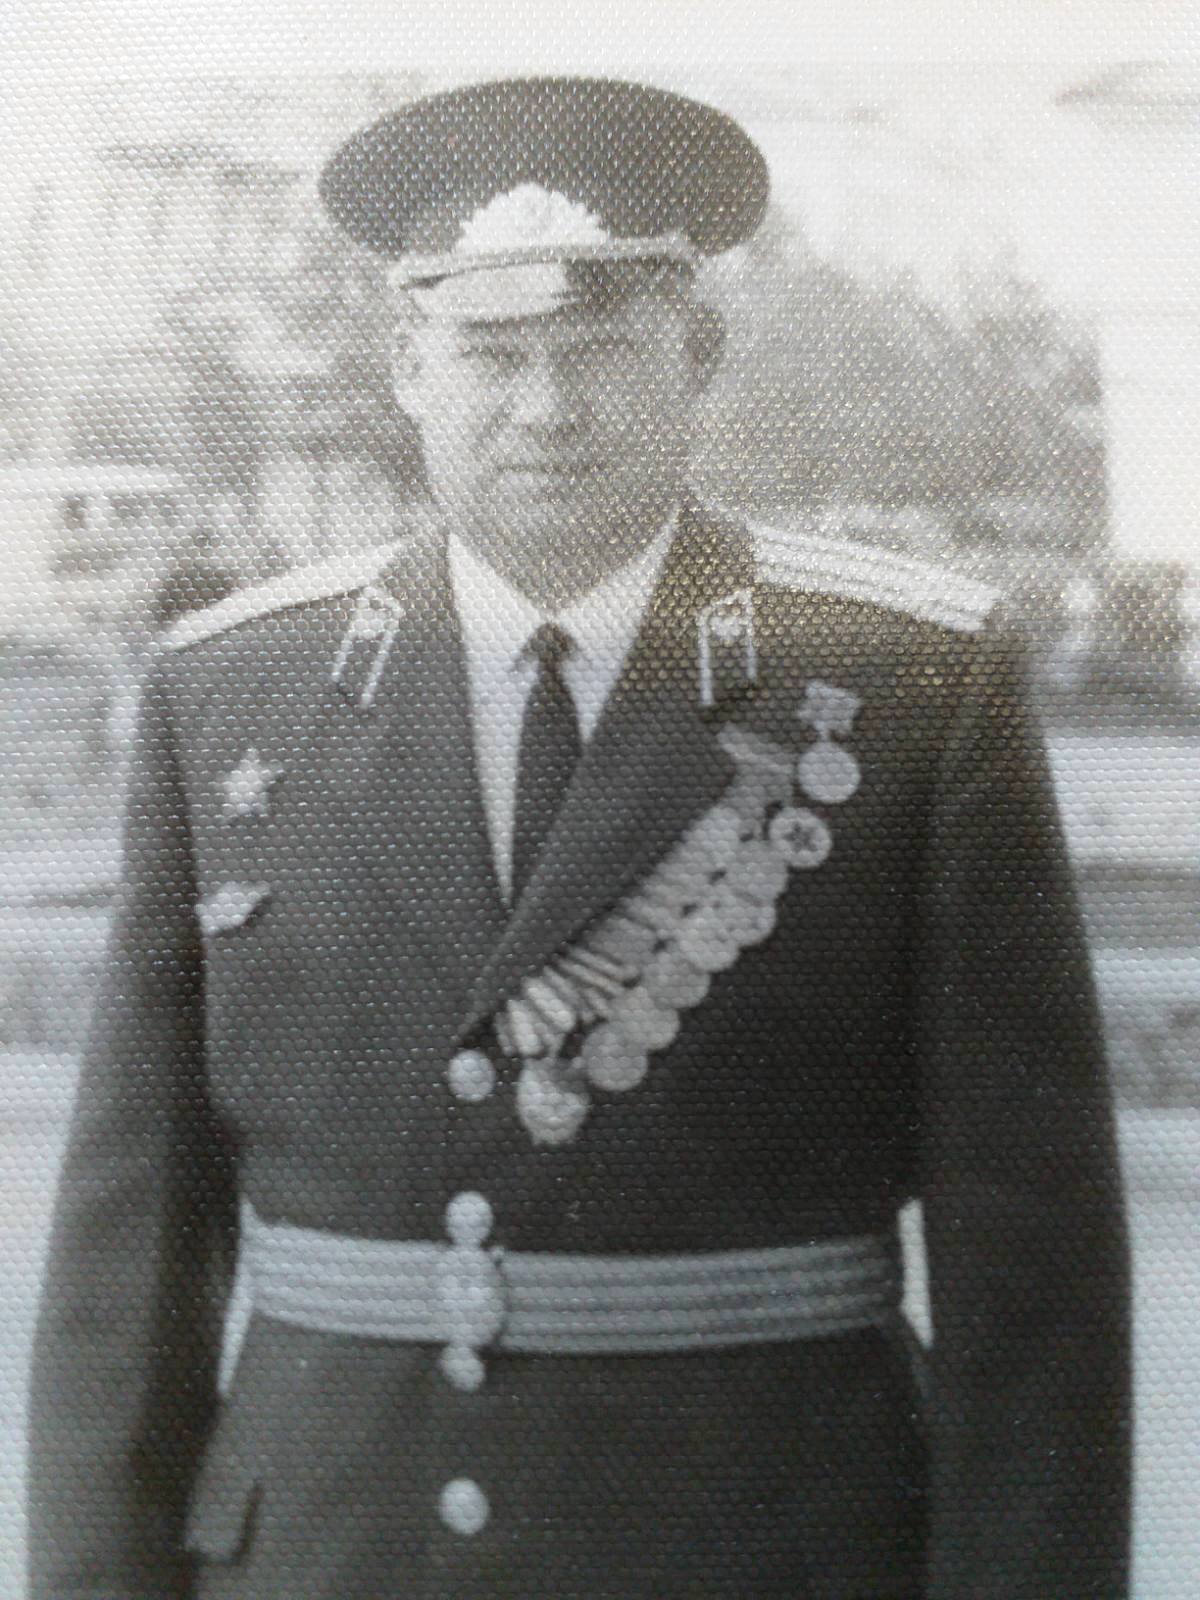 Михаил Федорович Аксентьев всю жизнь посвятил службе в армии, выйдя в отставку подполковником 